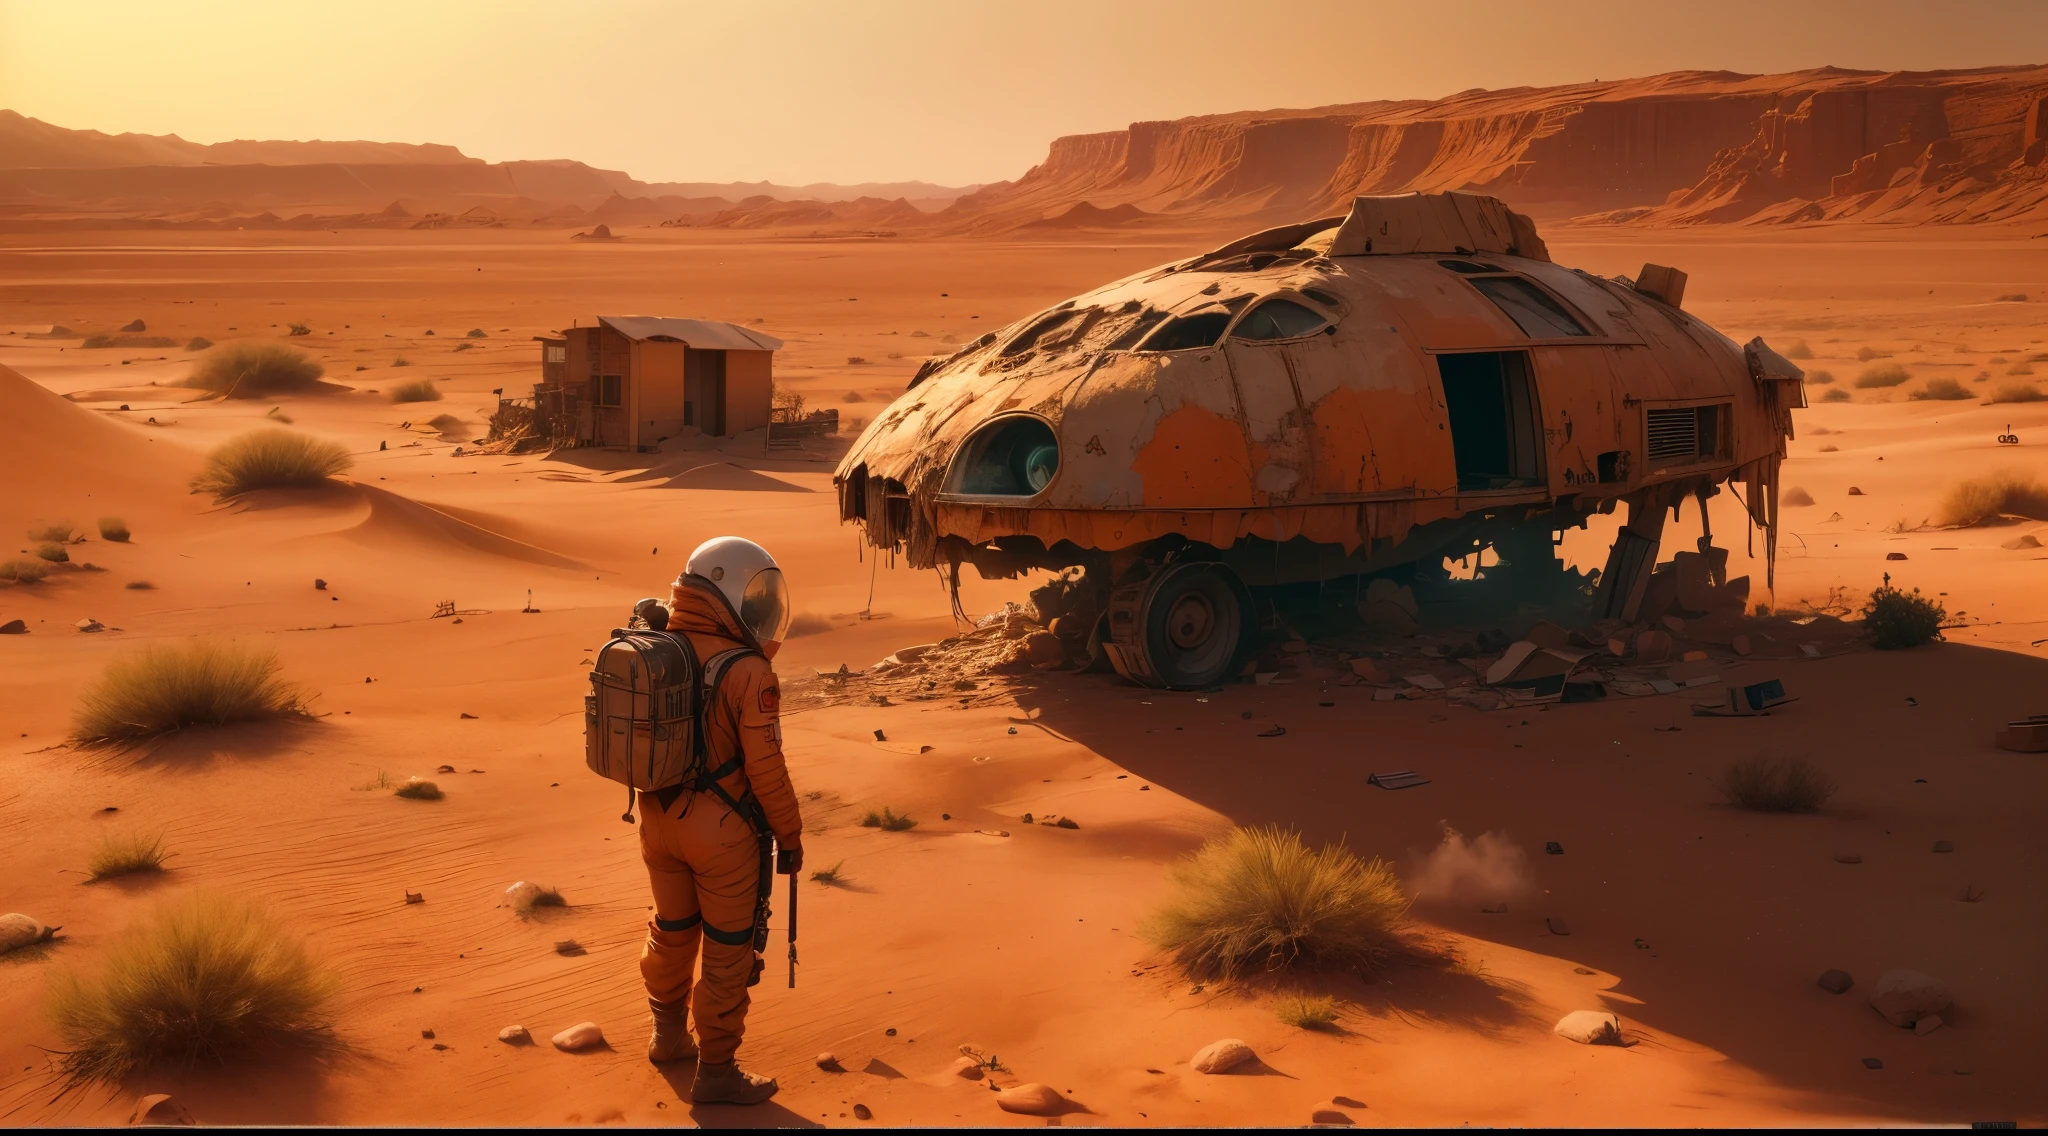 (أفضل جودة,4K,8 كيلو,دقة عالية,تحفة:1.2),مفصلة للغاية,(حقيقي,photoحقيقي,photo-حقيقي:1.37),2 ناجين (رجل وامرأة),صحراء, البيئة السينمائية,يقف بجانب سيارة محطمة,النظر إلى طائرة محطمة ضخمة من بعيد,التربة المريخية الحمراء, جو جاف ومغبر,المناظر الطبيعية المريخية التي لا ترحم,غروب الشمس في الأفق, صب الظلال الطويلة,مساحة واسعة من الأراضي القاحلة,محيط صارخ ومقفر,علامات الاضمحلال والهجر,هواء ثقيل من العزلة والعزلة,بقايا الحضارة الإنسانية,النباتات المتضخمة تستصلح الأرض,المباني المهجورة منذ فترة طويلة تنهار في المسافة,ذرات الغبار العائمة في الهواء,مأوى مؤقت مصنوع من المواد التي تم إنقاذها,شمس حارقة تضربهم,تعابير التعب ممتزجة بالعزم على وجوههم,الملابس البالية,الأدوات واللوازم متناثرة حولهم,بدلات البقاء على قيد الحياة لحمايتهم من البيئة القاسية,منظر بعيد لمدينة مريخية مستقبلية, فارغة وصامتة,شعور عميق بالوحدة والشوق,الأشكال الحمراء والبرتقالية تهيمن على لوحة الألوان,الإضاءة الدرامية, إلقاء الظلال العميقة,ailing sounds of wind blowing through the صحراء,وأصداء الصمت تغلف المشهد,اتساع لا يسبر غوره من المريخ, الشعور بالصغر وعدم الأهمية في المخطط الكبير للأشياء.